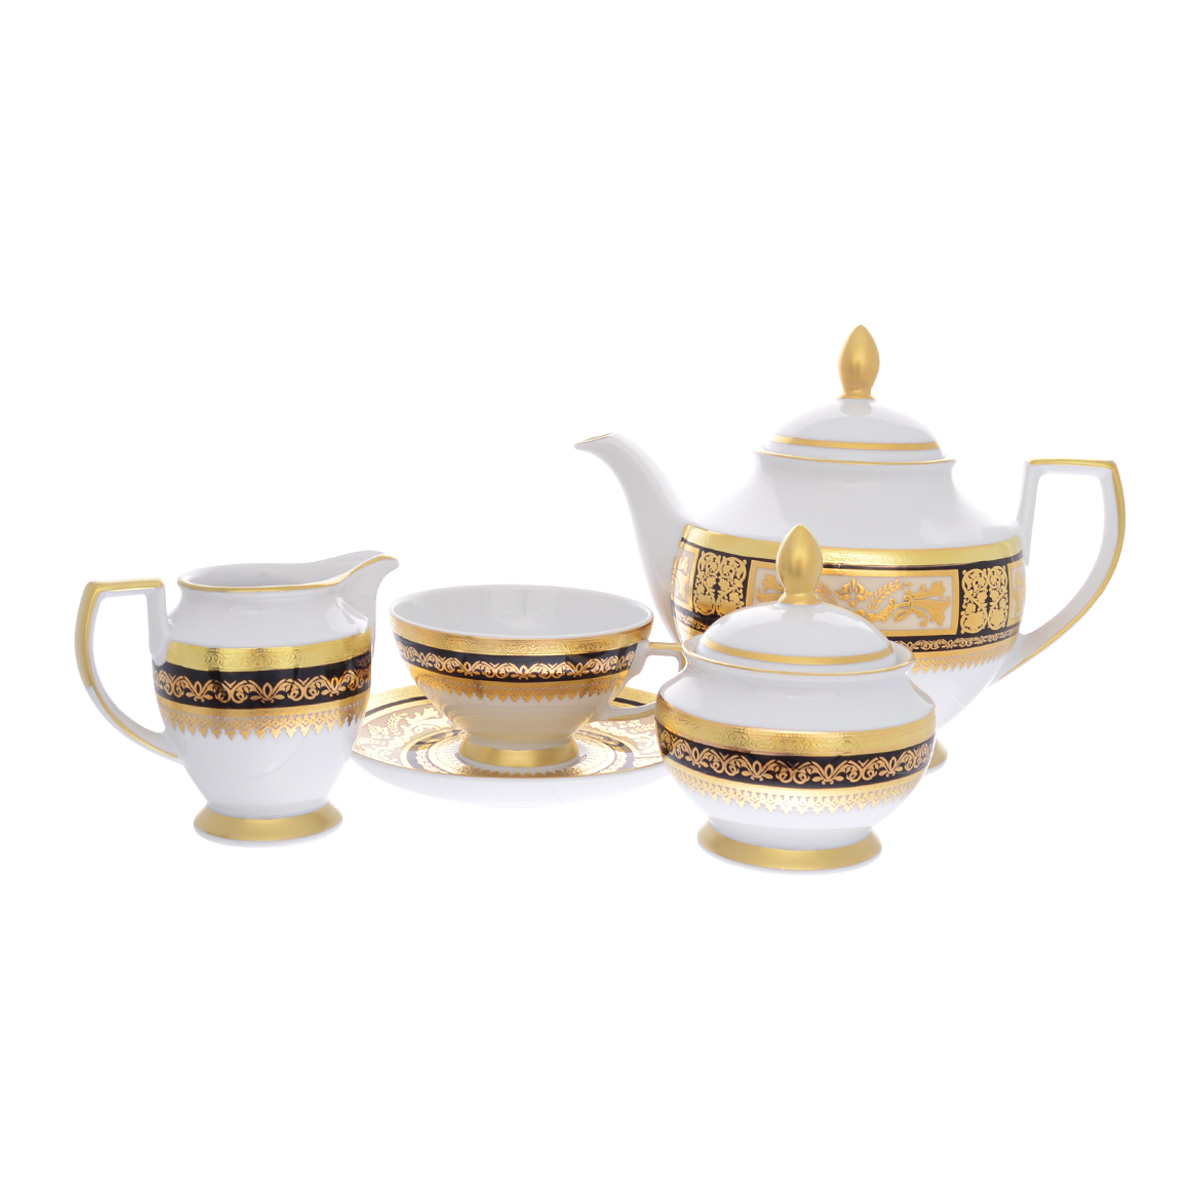 Чайные сервизы  The Furnish Чайный сервиз constanza tosca black gold 6 персон 17 предметов (falkenporzellan) золотой